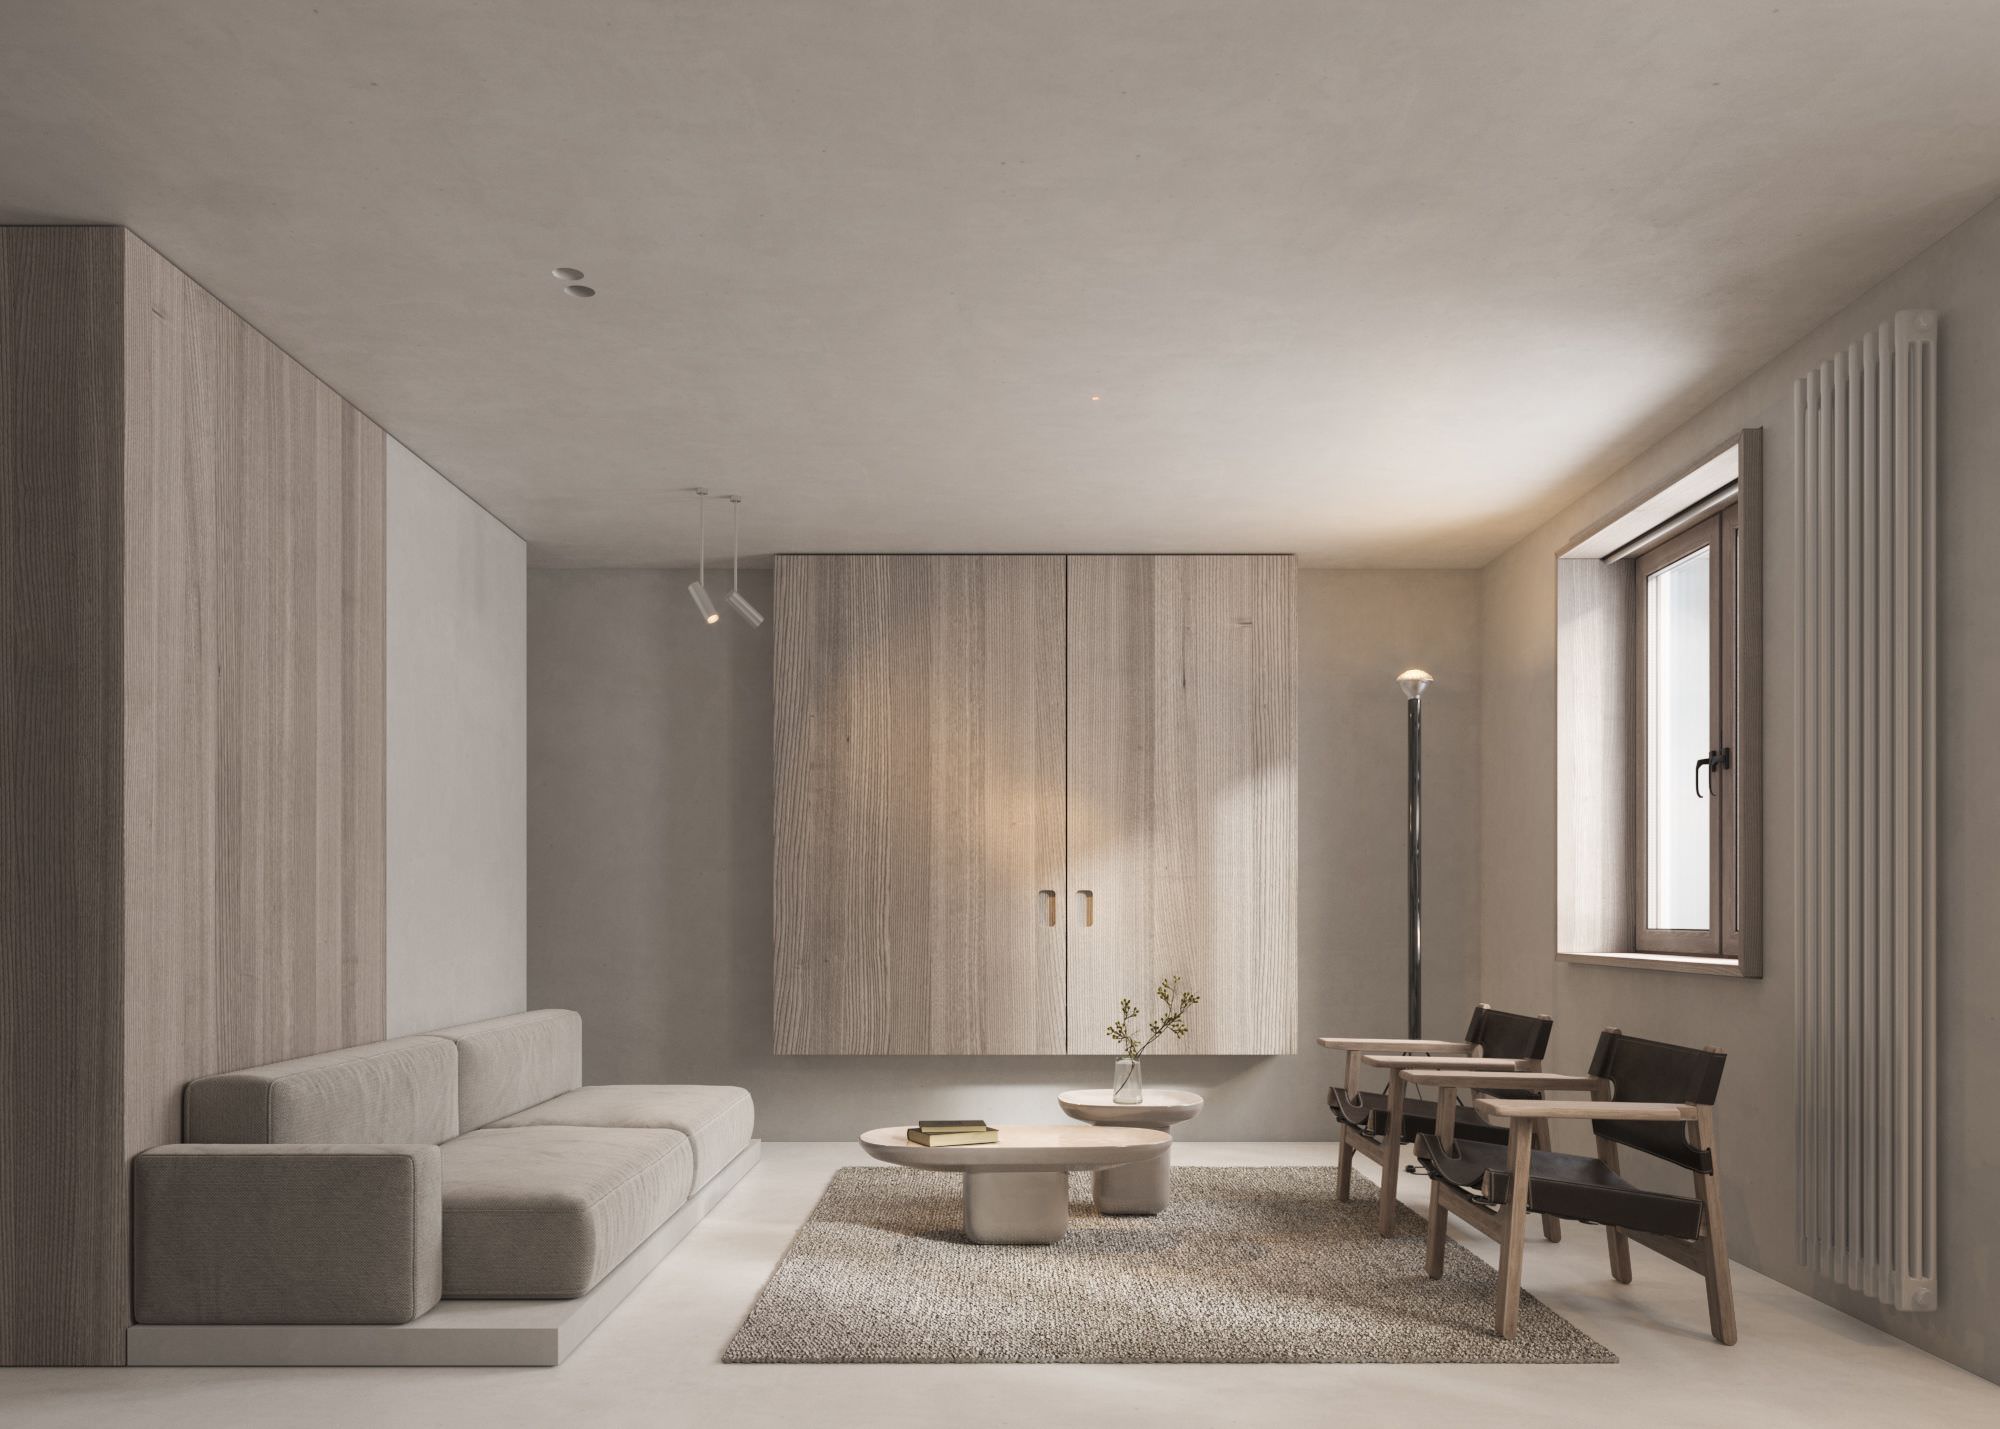 Thiết kế phòng khách tông màu nude với phong cách chung cư tối giản 